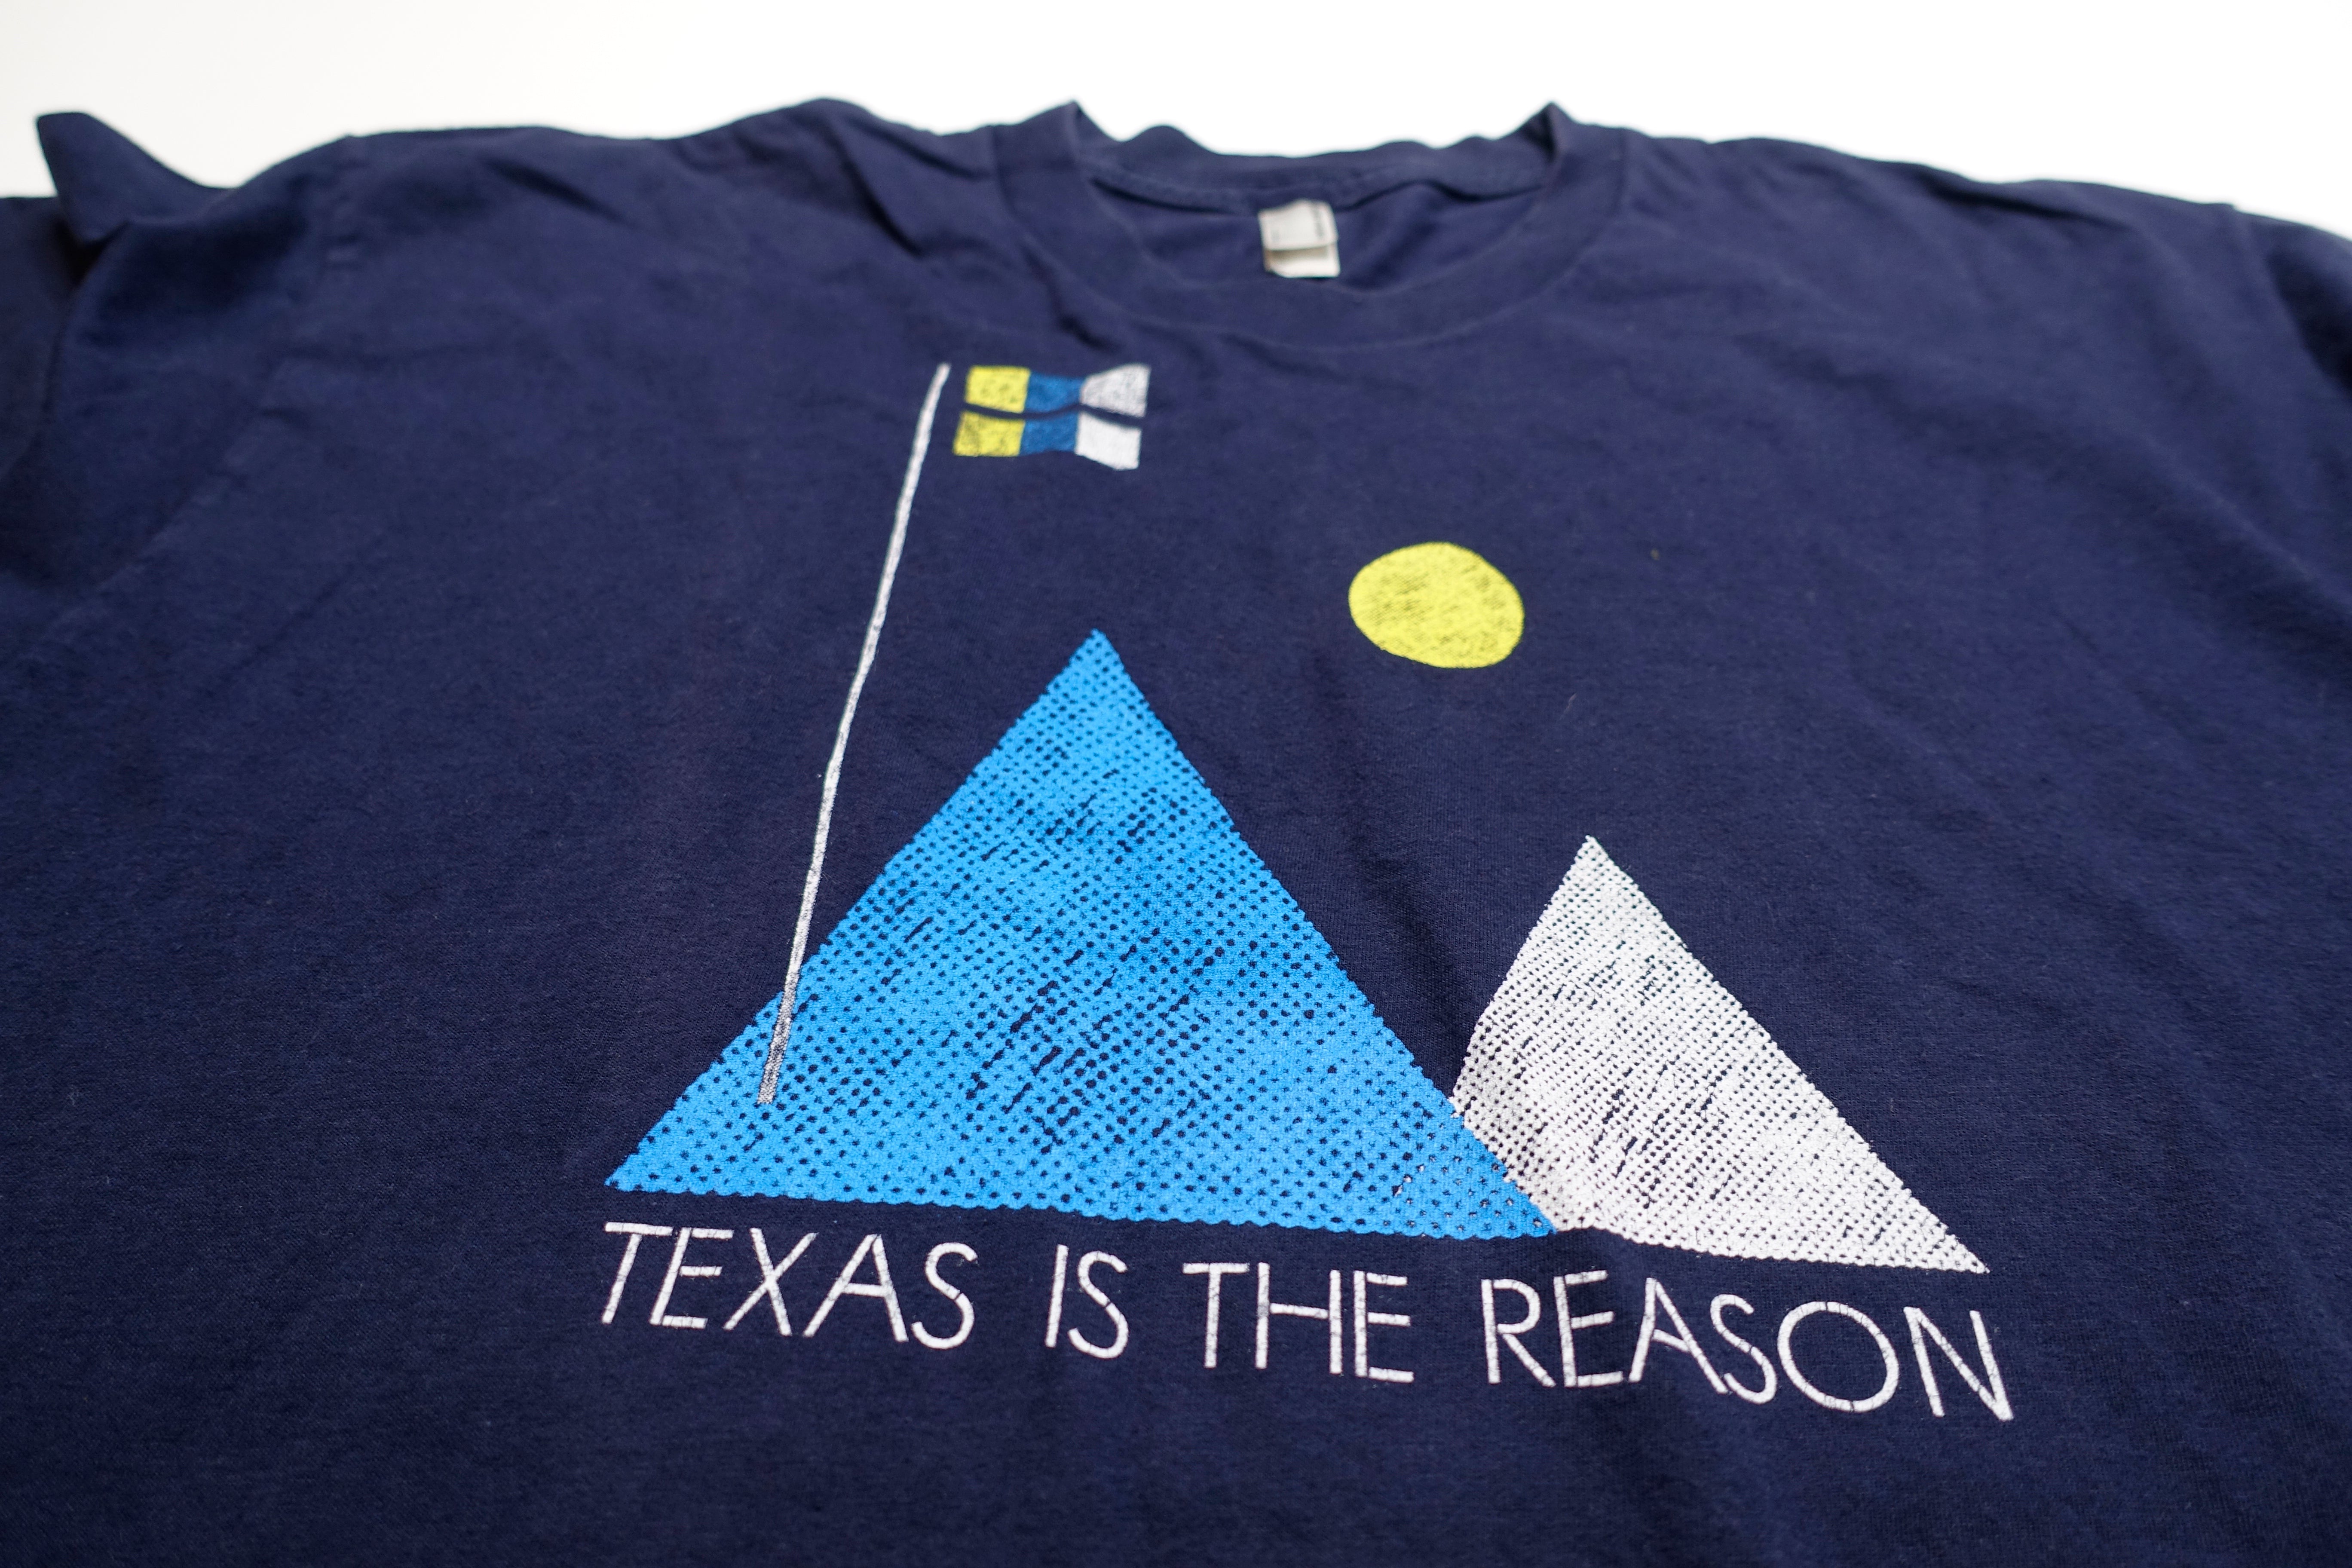 Texas Is The Reason - Mountain Reunion Tour Shirt Size XL